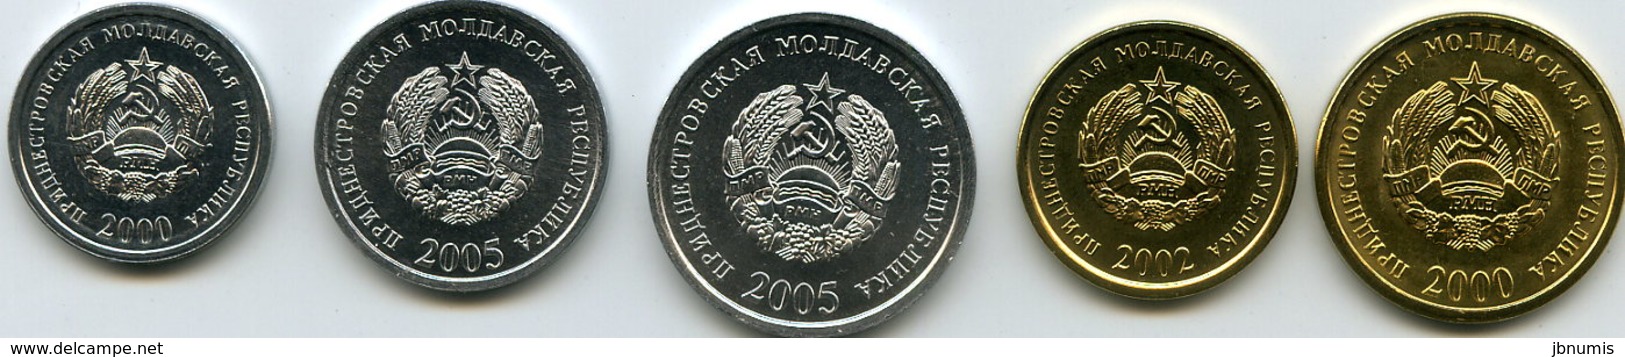 Moldavie Transdniestrie Transdnistria Série De 5 Pièces 1 à 50 Kopeek 2000 - 2005 Unc - Moldova